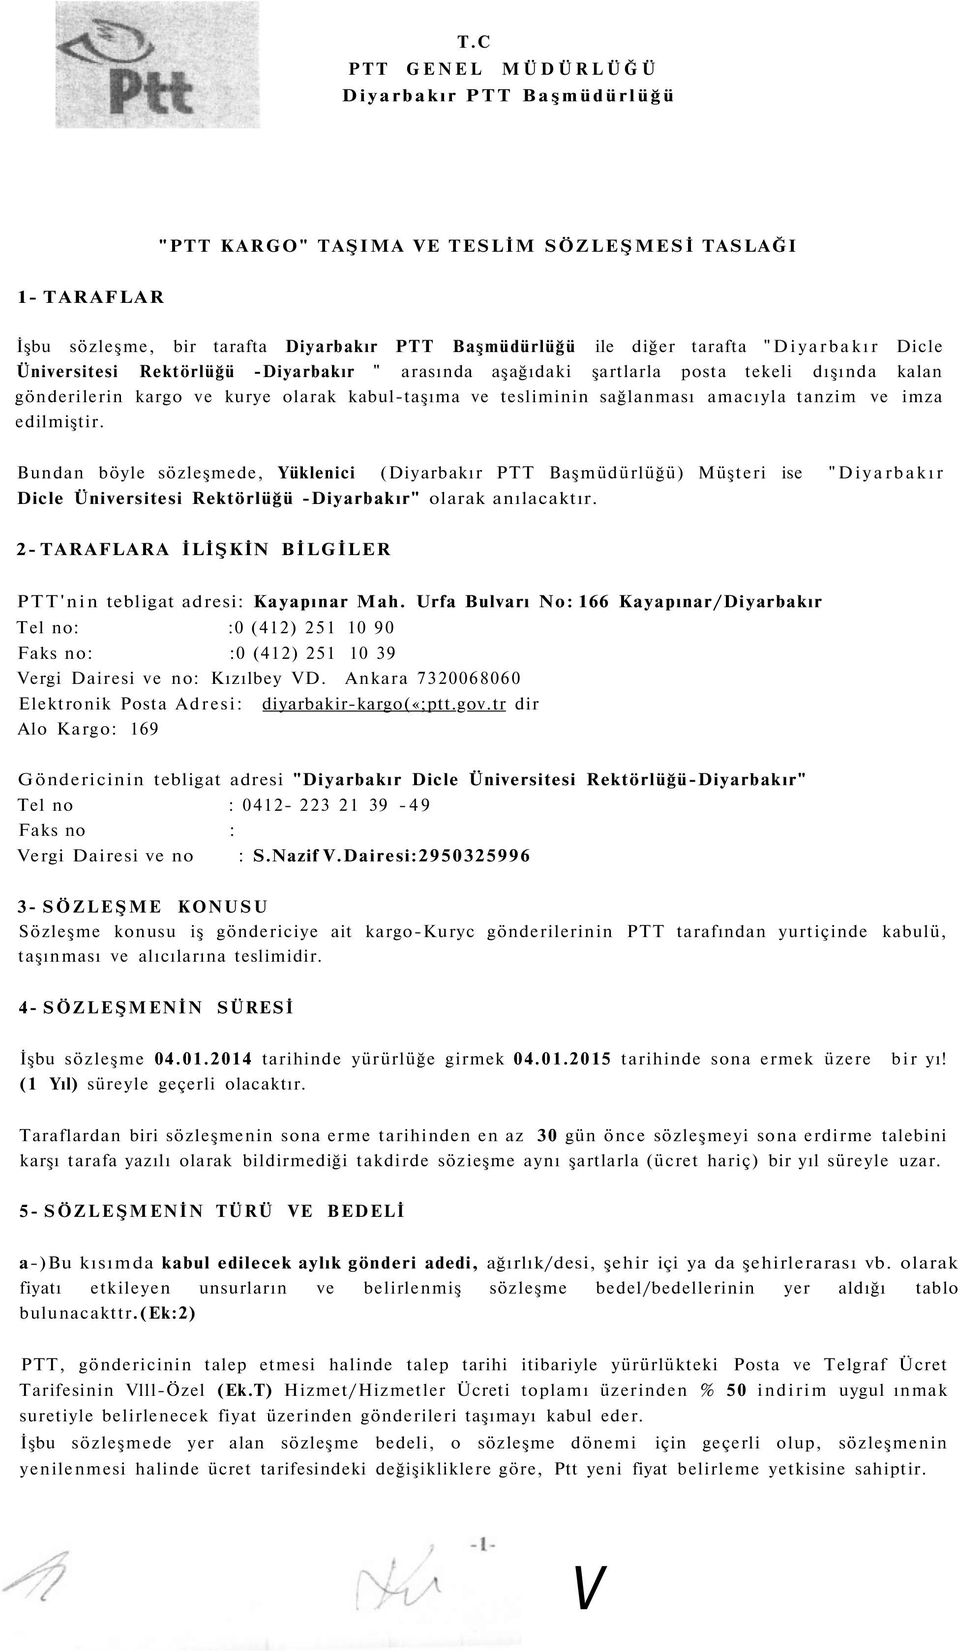 edilmiştir. Bundan böyle sözleşmede, Yüklenici (Diyarbakır PTT Başmüdürlüğü) Müşteri ise "Diyarbakır Dicle Üniversitesi Rektörlüğü -Diyarbakır" olarak anılacaktır.